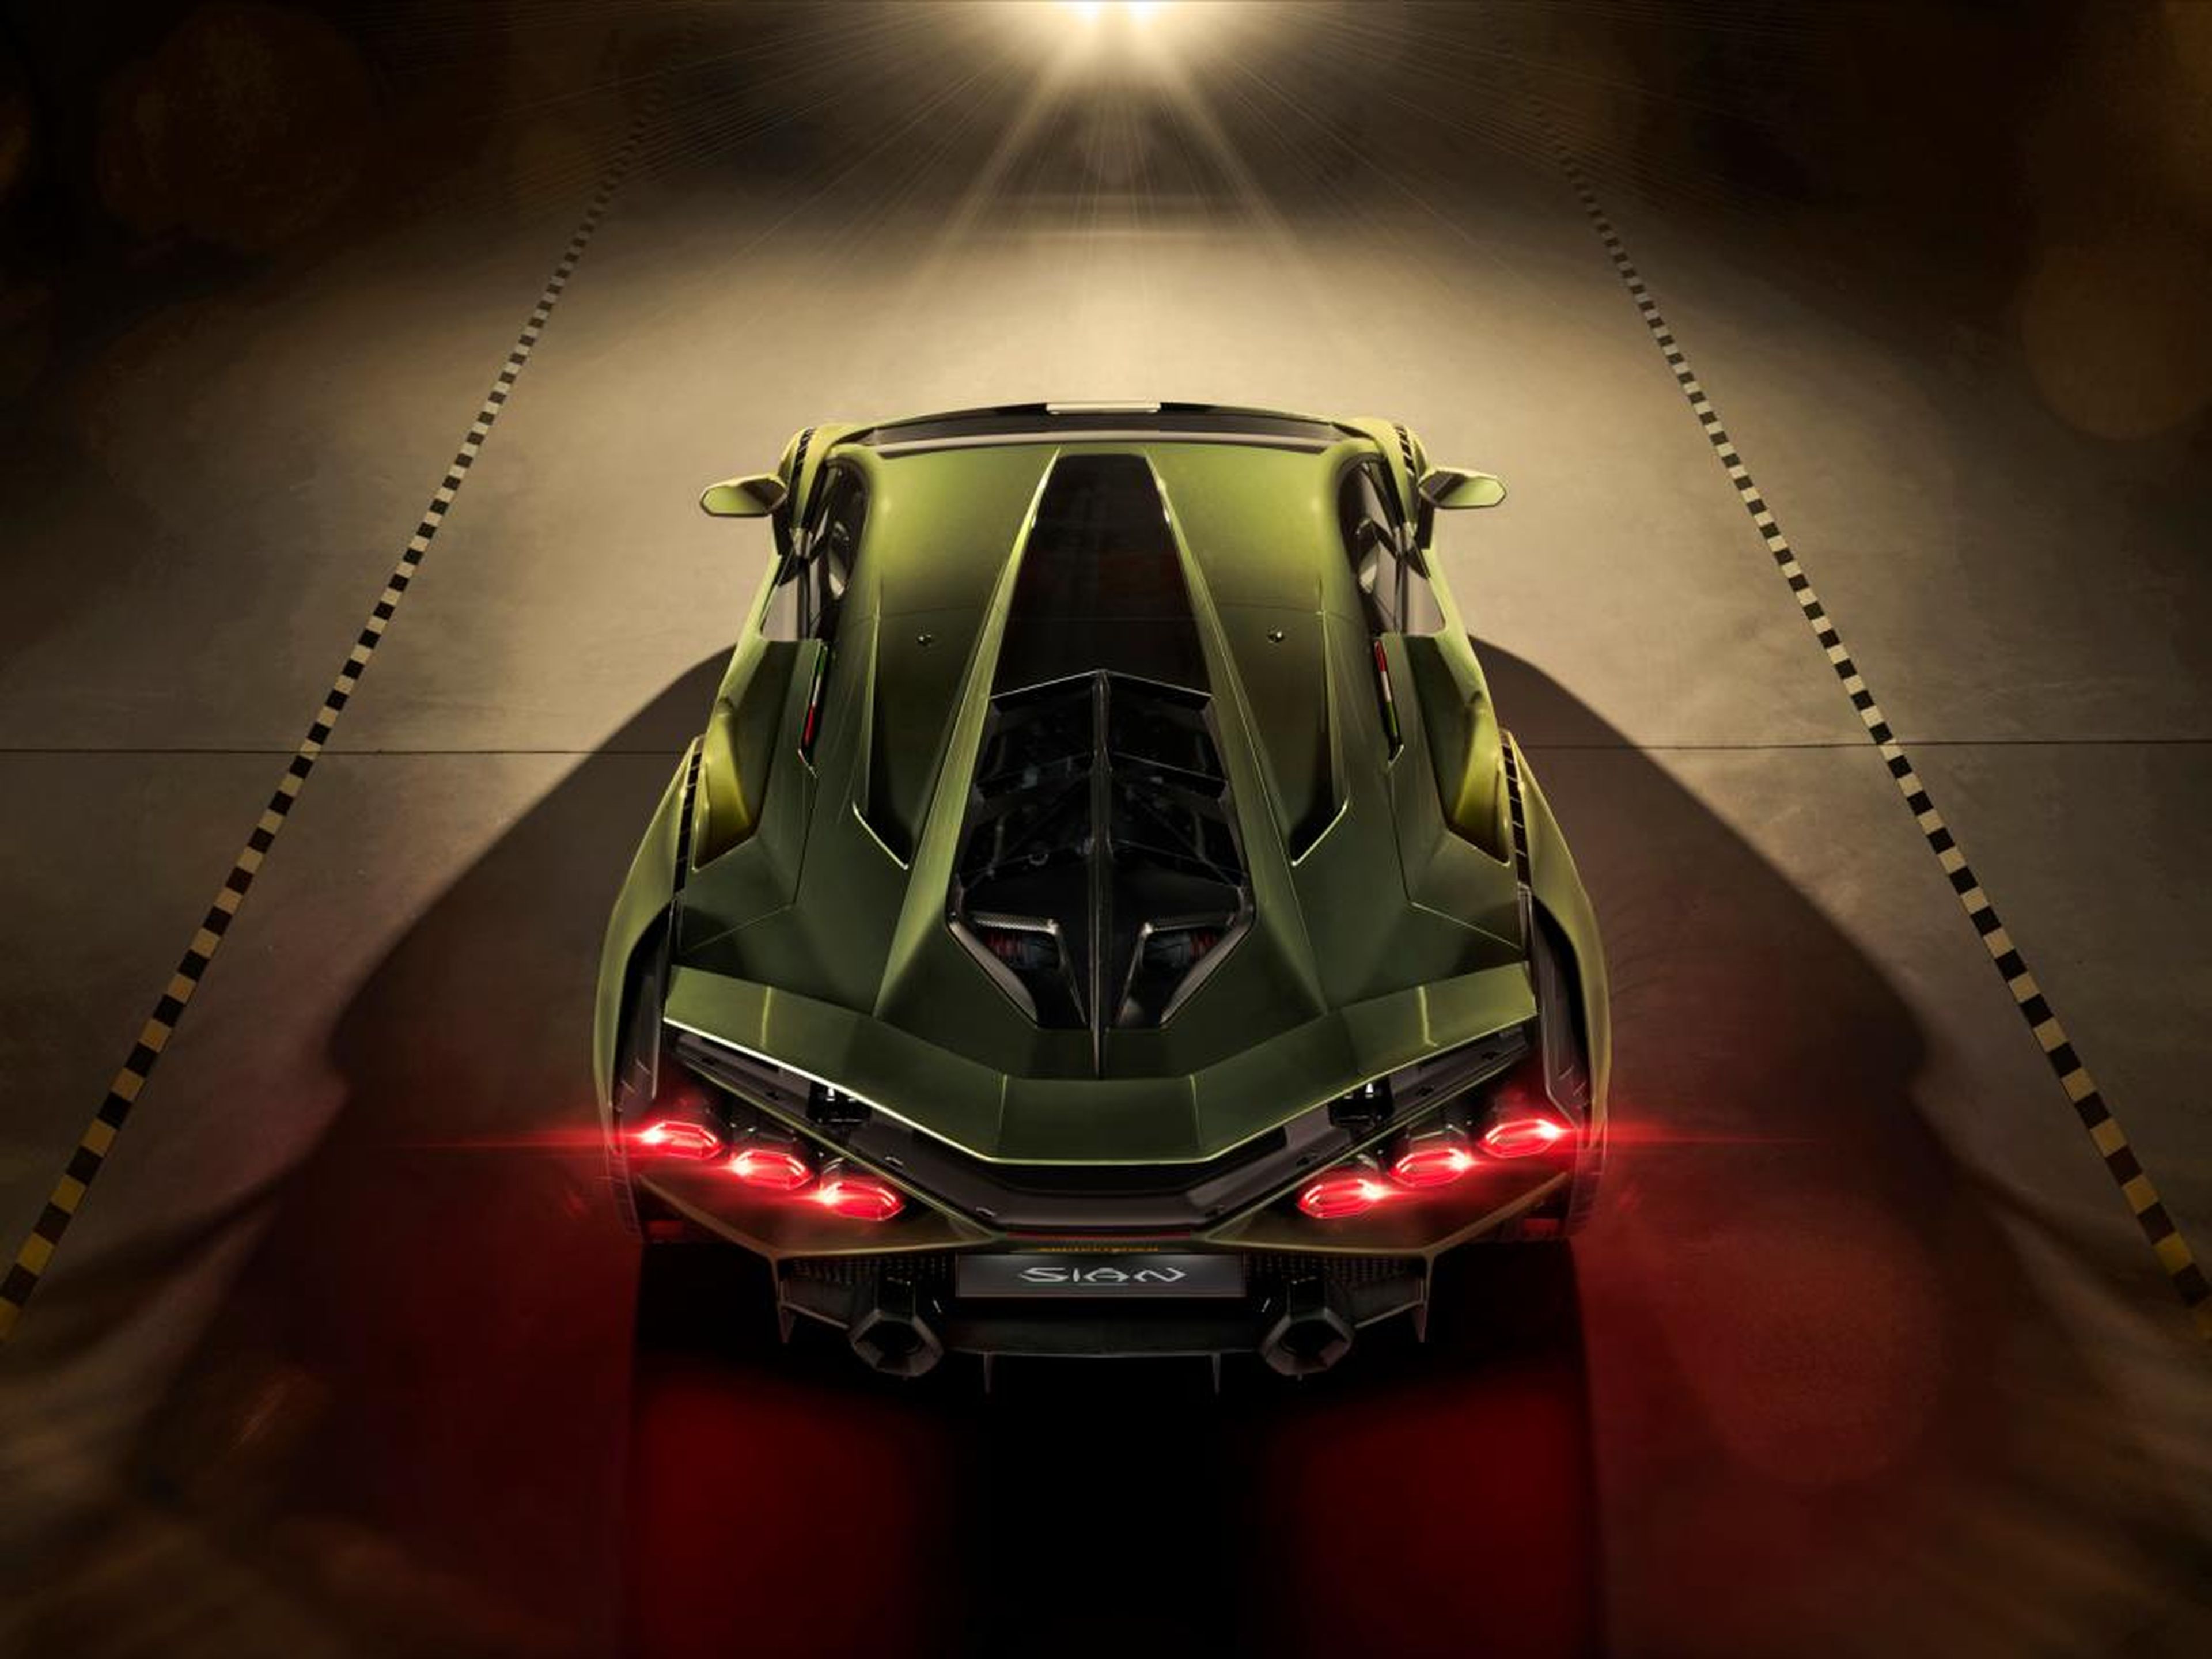 El coche utiliza el mismo motor atmosférico V12 de 6,5 litros que Lamborghini puso en el SVJ.